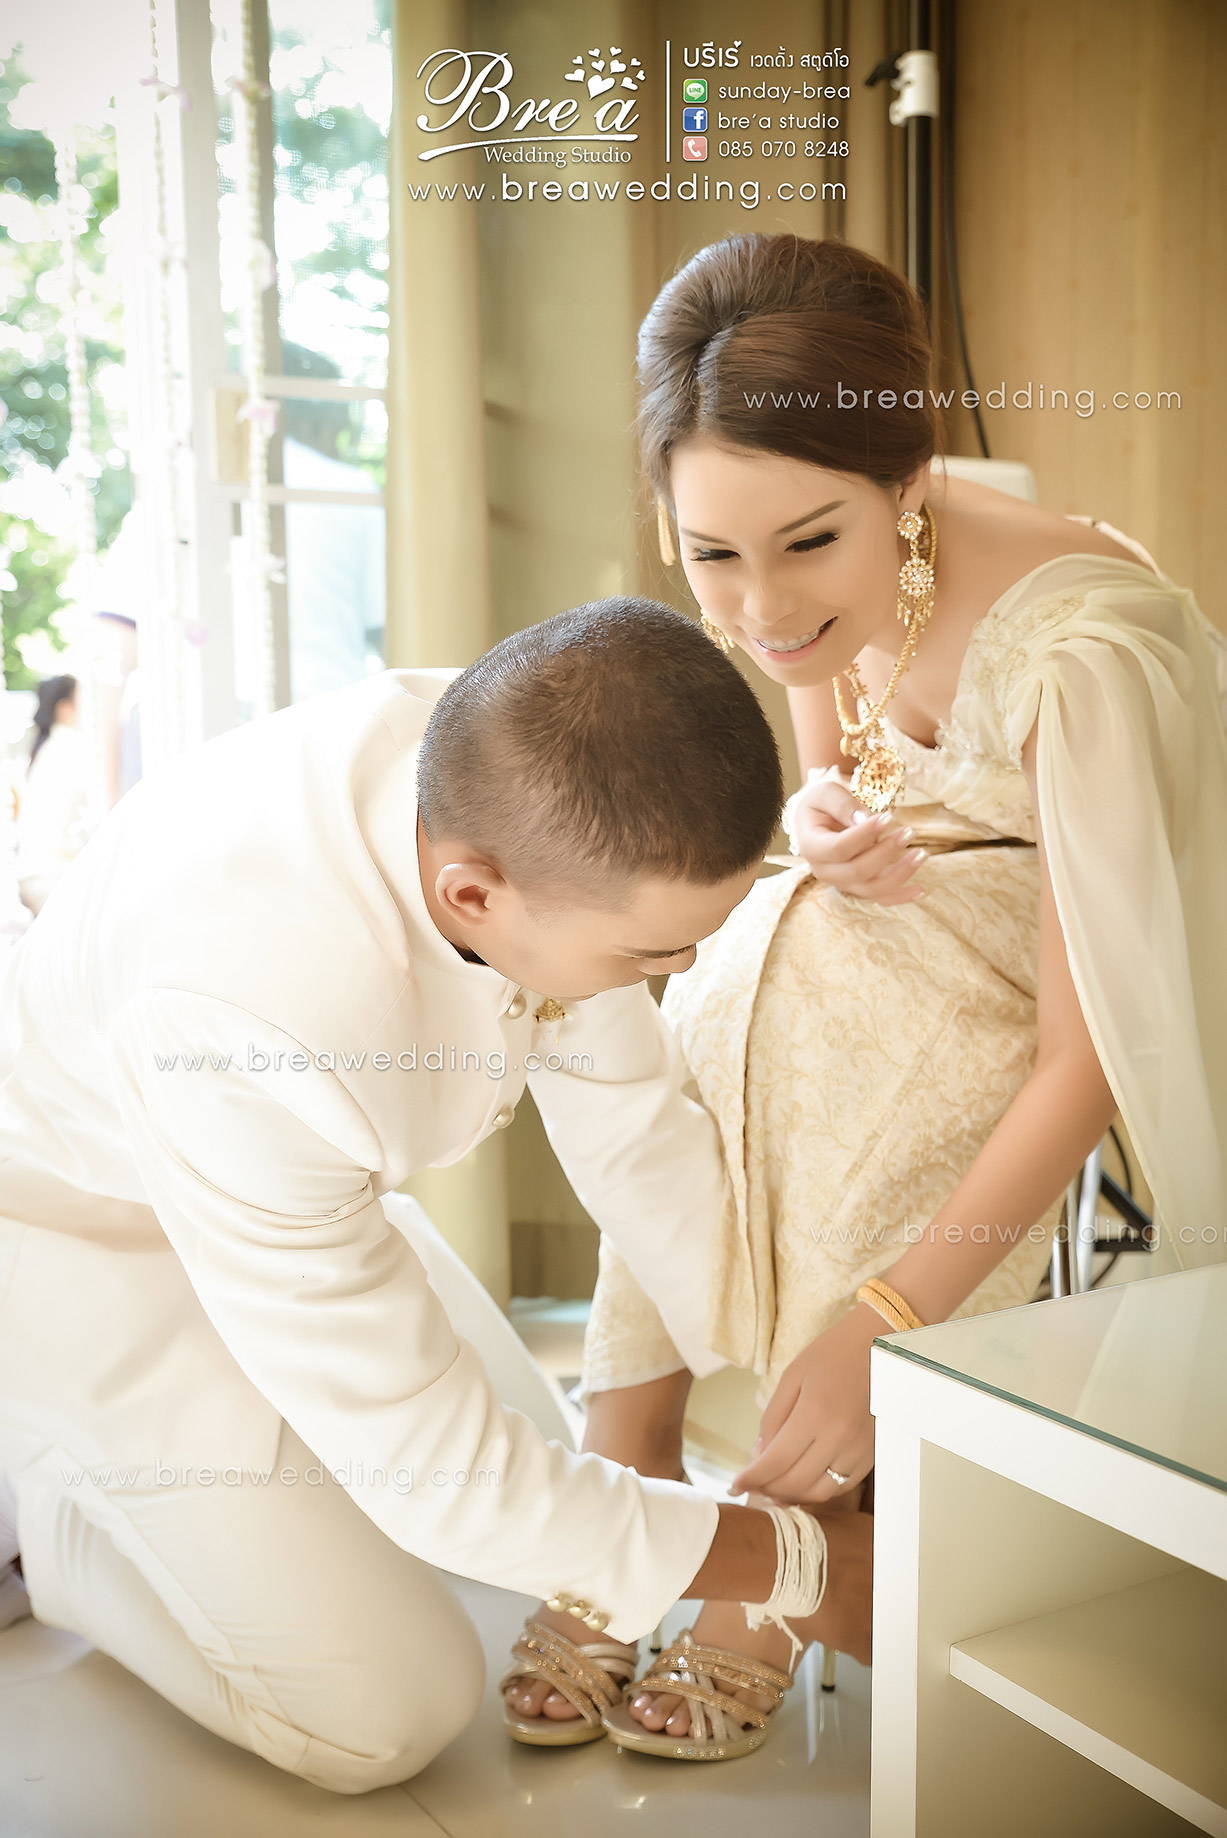 ถ่ายรูปแต่งงาน ถ่ายภาพวันแต่งงาน ร้านเวดดิ้ง เช่าชุดแต่งงาน นนทบุรี